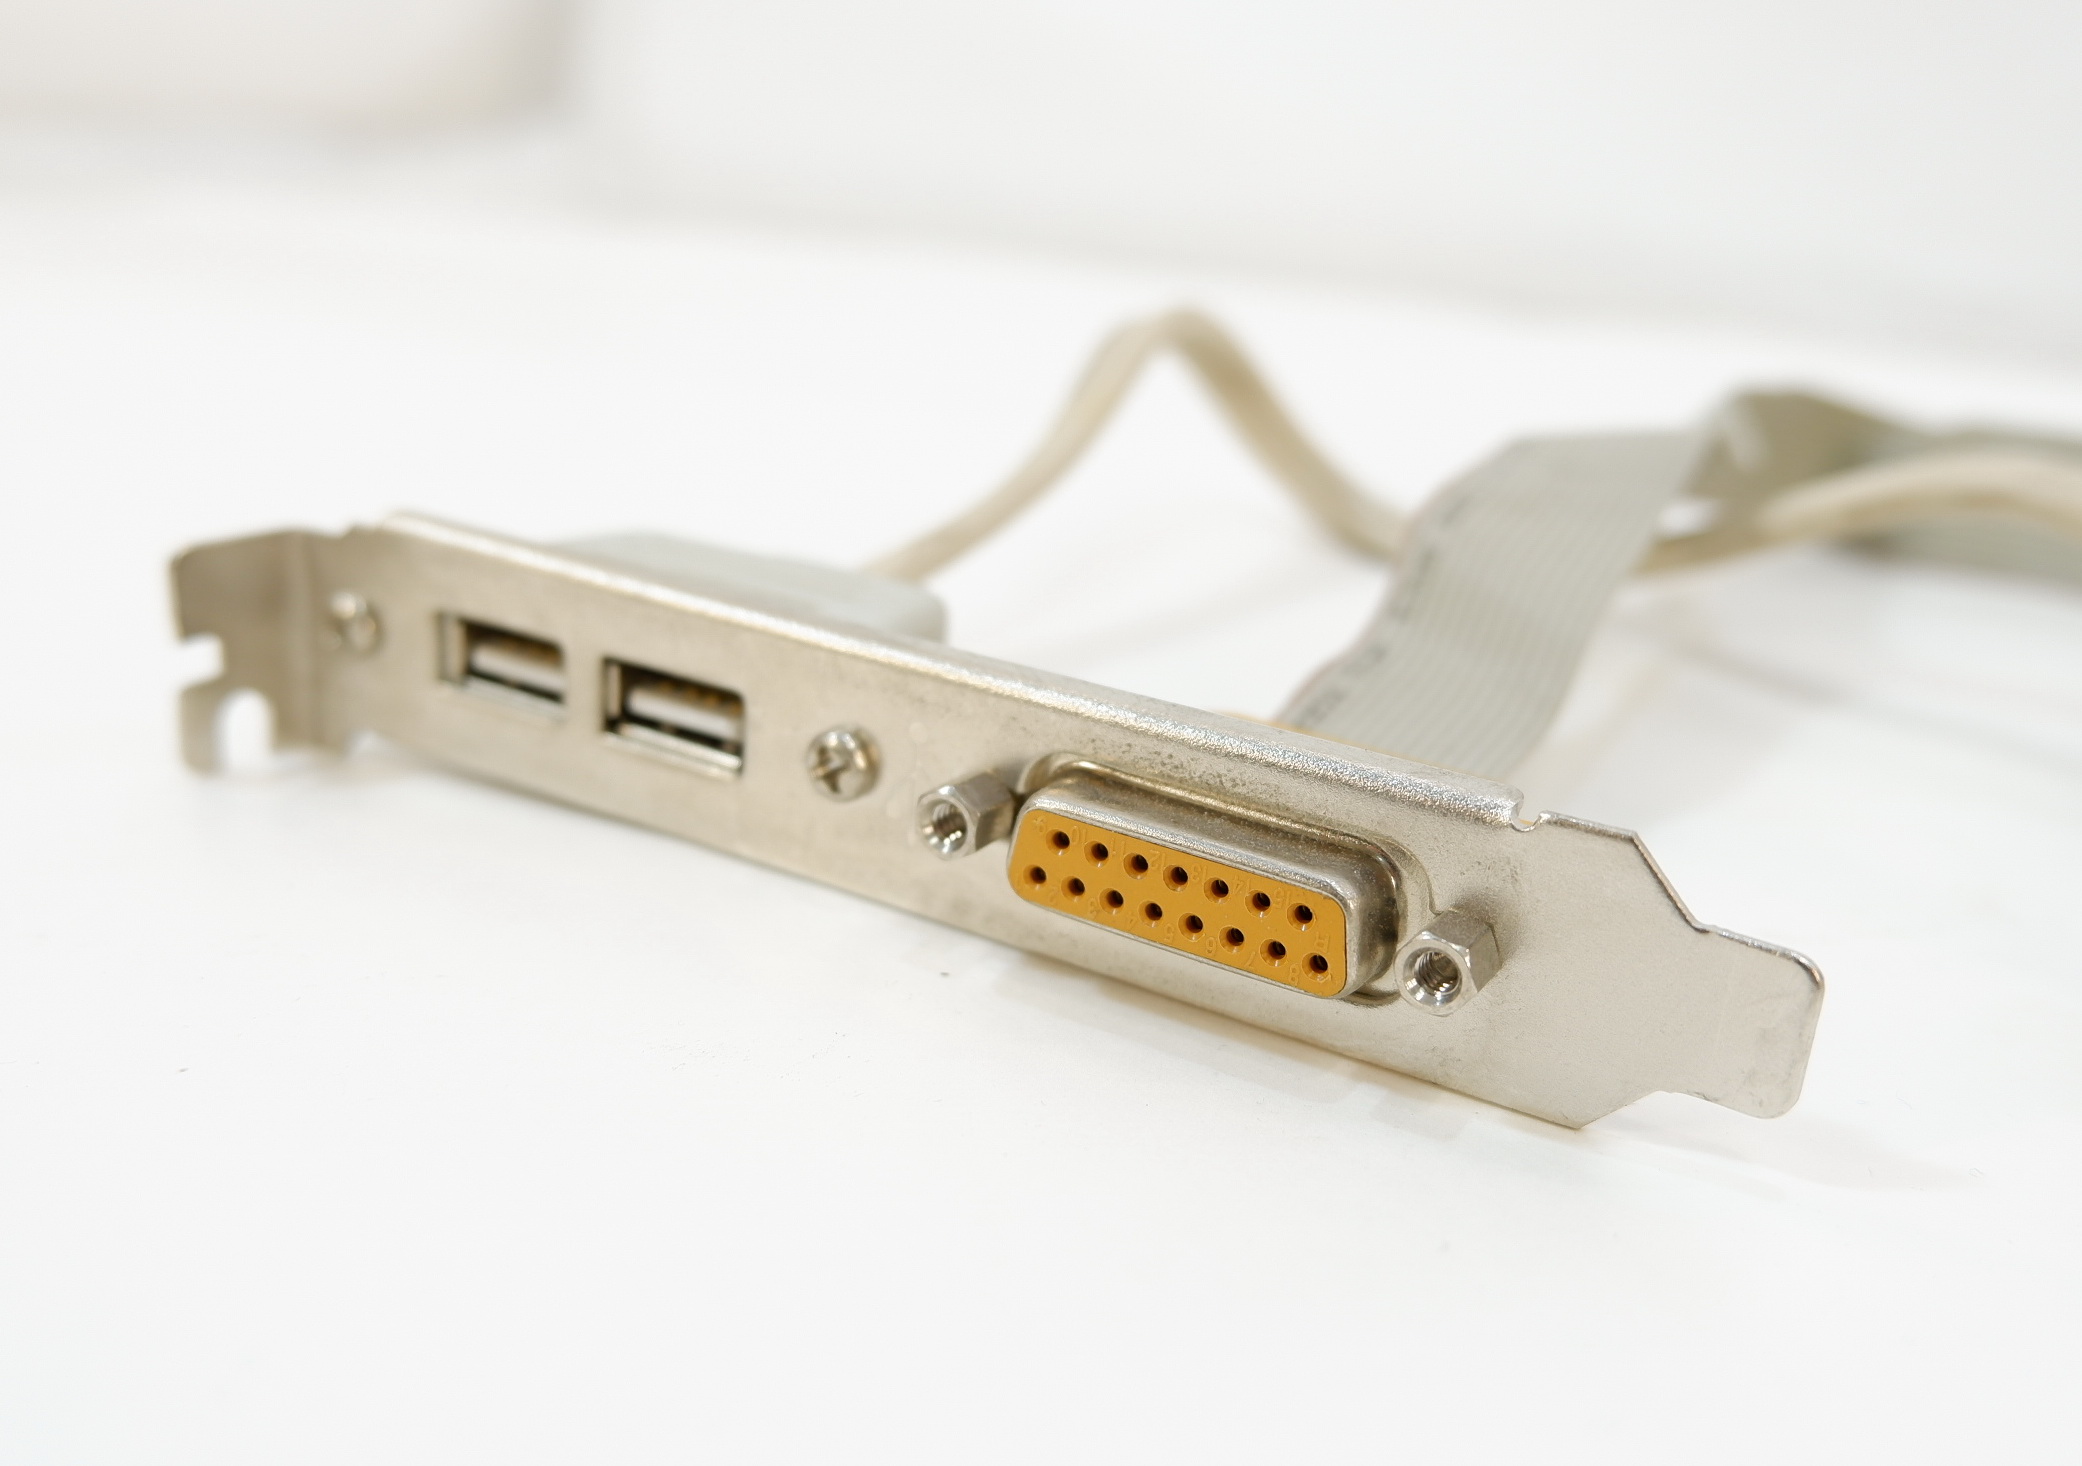 Гейм порт. Игровой порт (Gameport/Midi-Port). Планка 1394 на заднюю панель. Планка USB 2.0 FIREWIRE на заднюю панель. Разъем 2ports USB+1port IEEE планка портов ( планка с 2 разъемами).